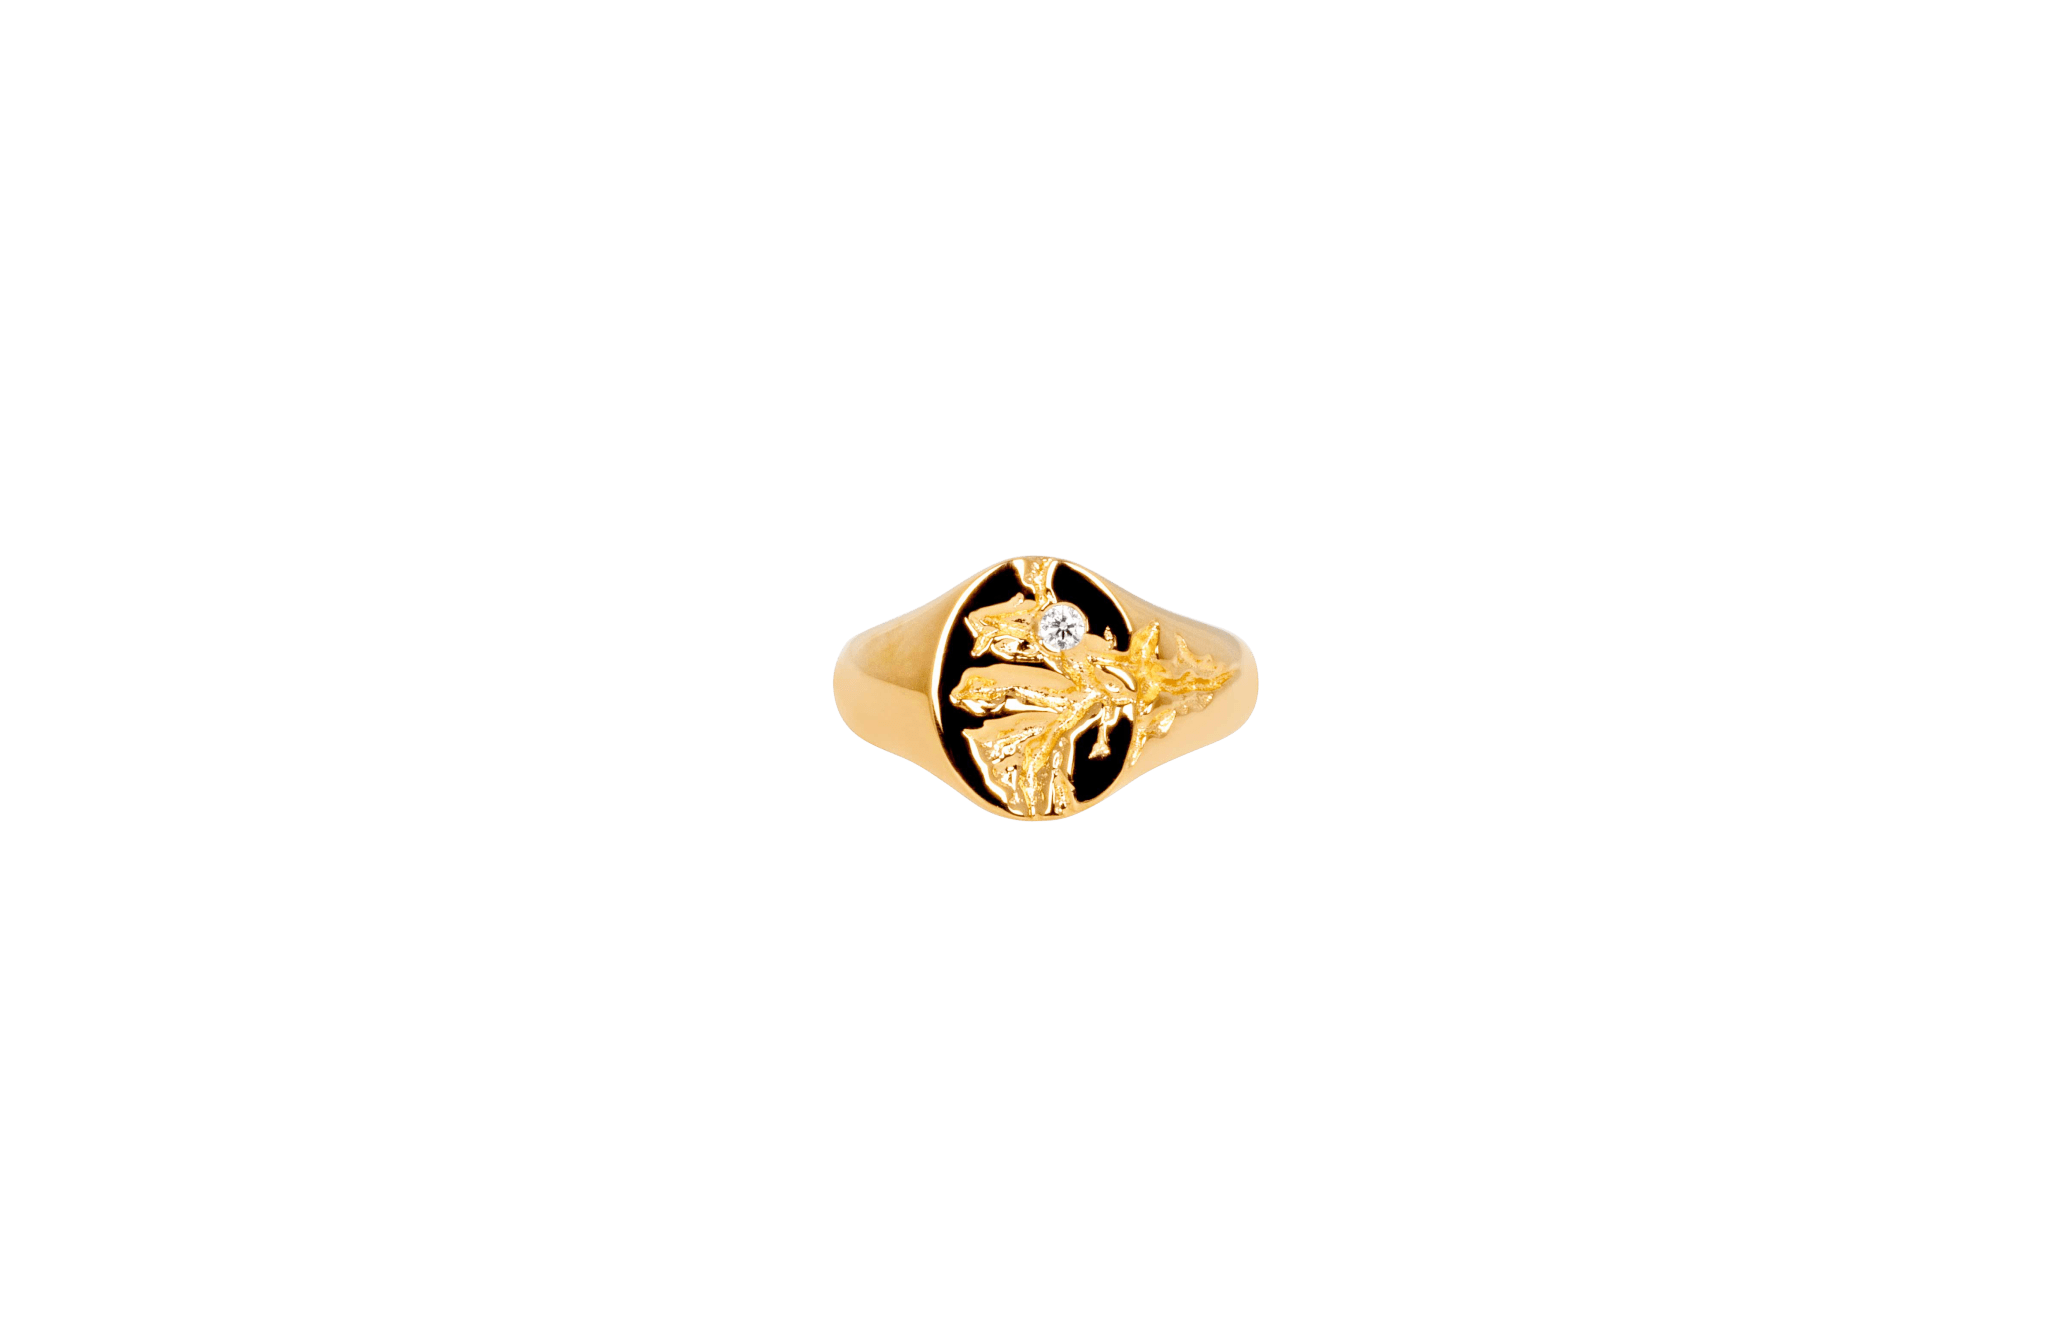 IX Mini Oval Nature Signet Ring